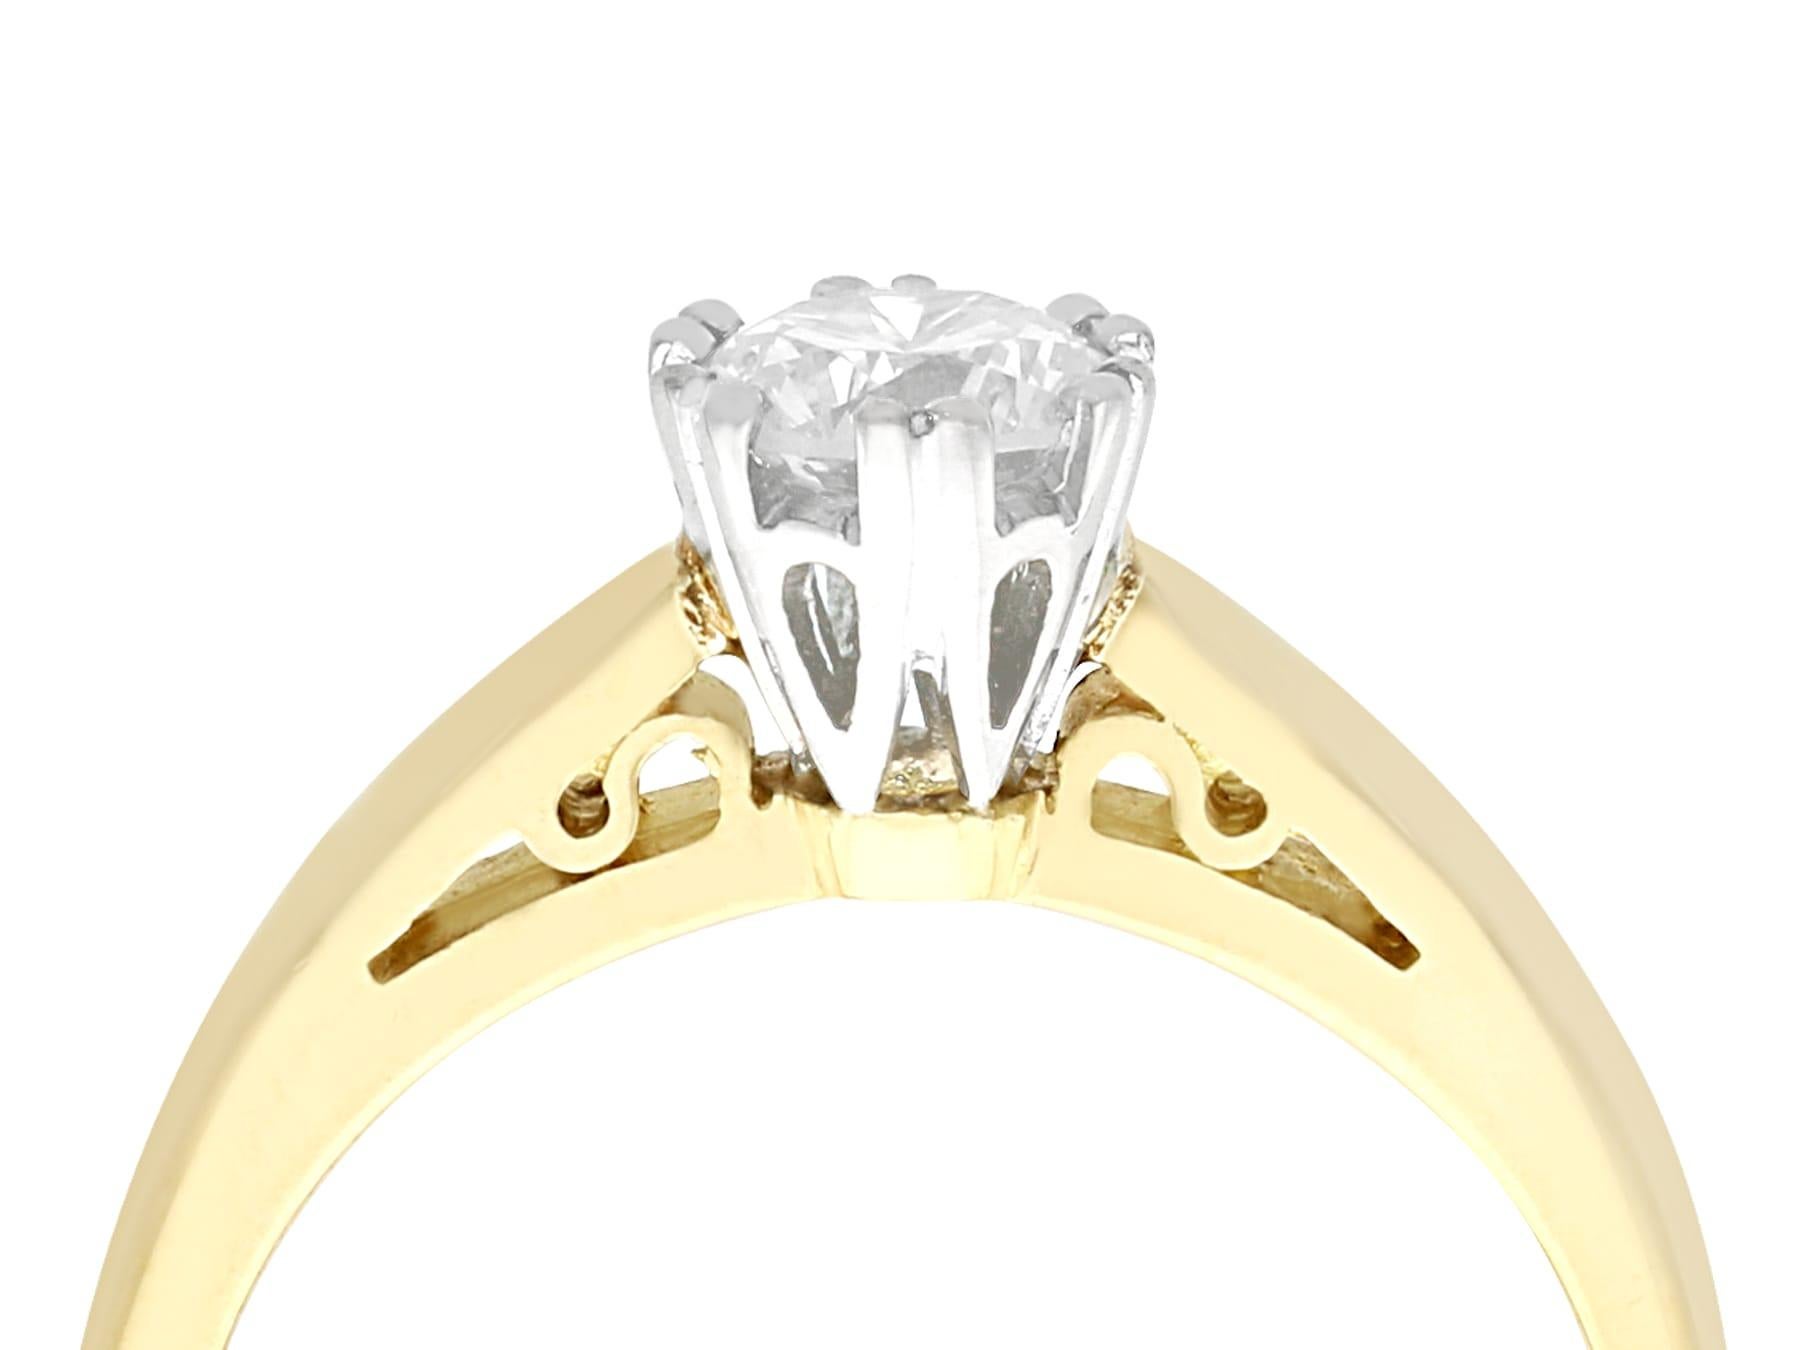 Une belle et impressionnante bague de fiançailles solitaire en or jaune 18 carats, or blanc 18 carats, sertie d'un diamant de 0,56 carat. Cette bague fait partie de nos collections de bijoux en diamant et de bijoux de succession.

Cette bague